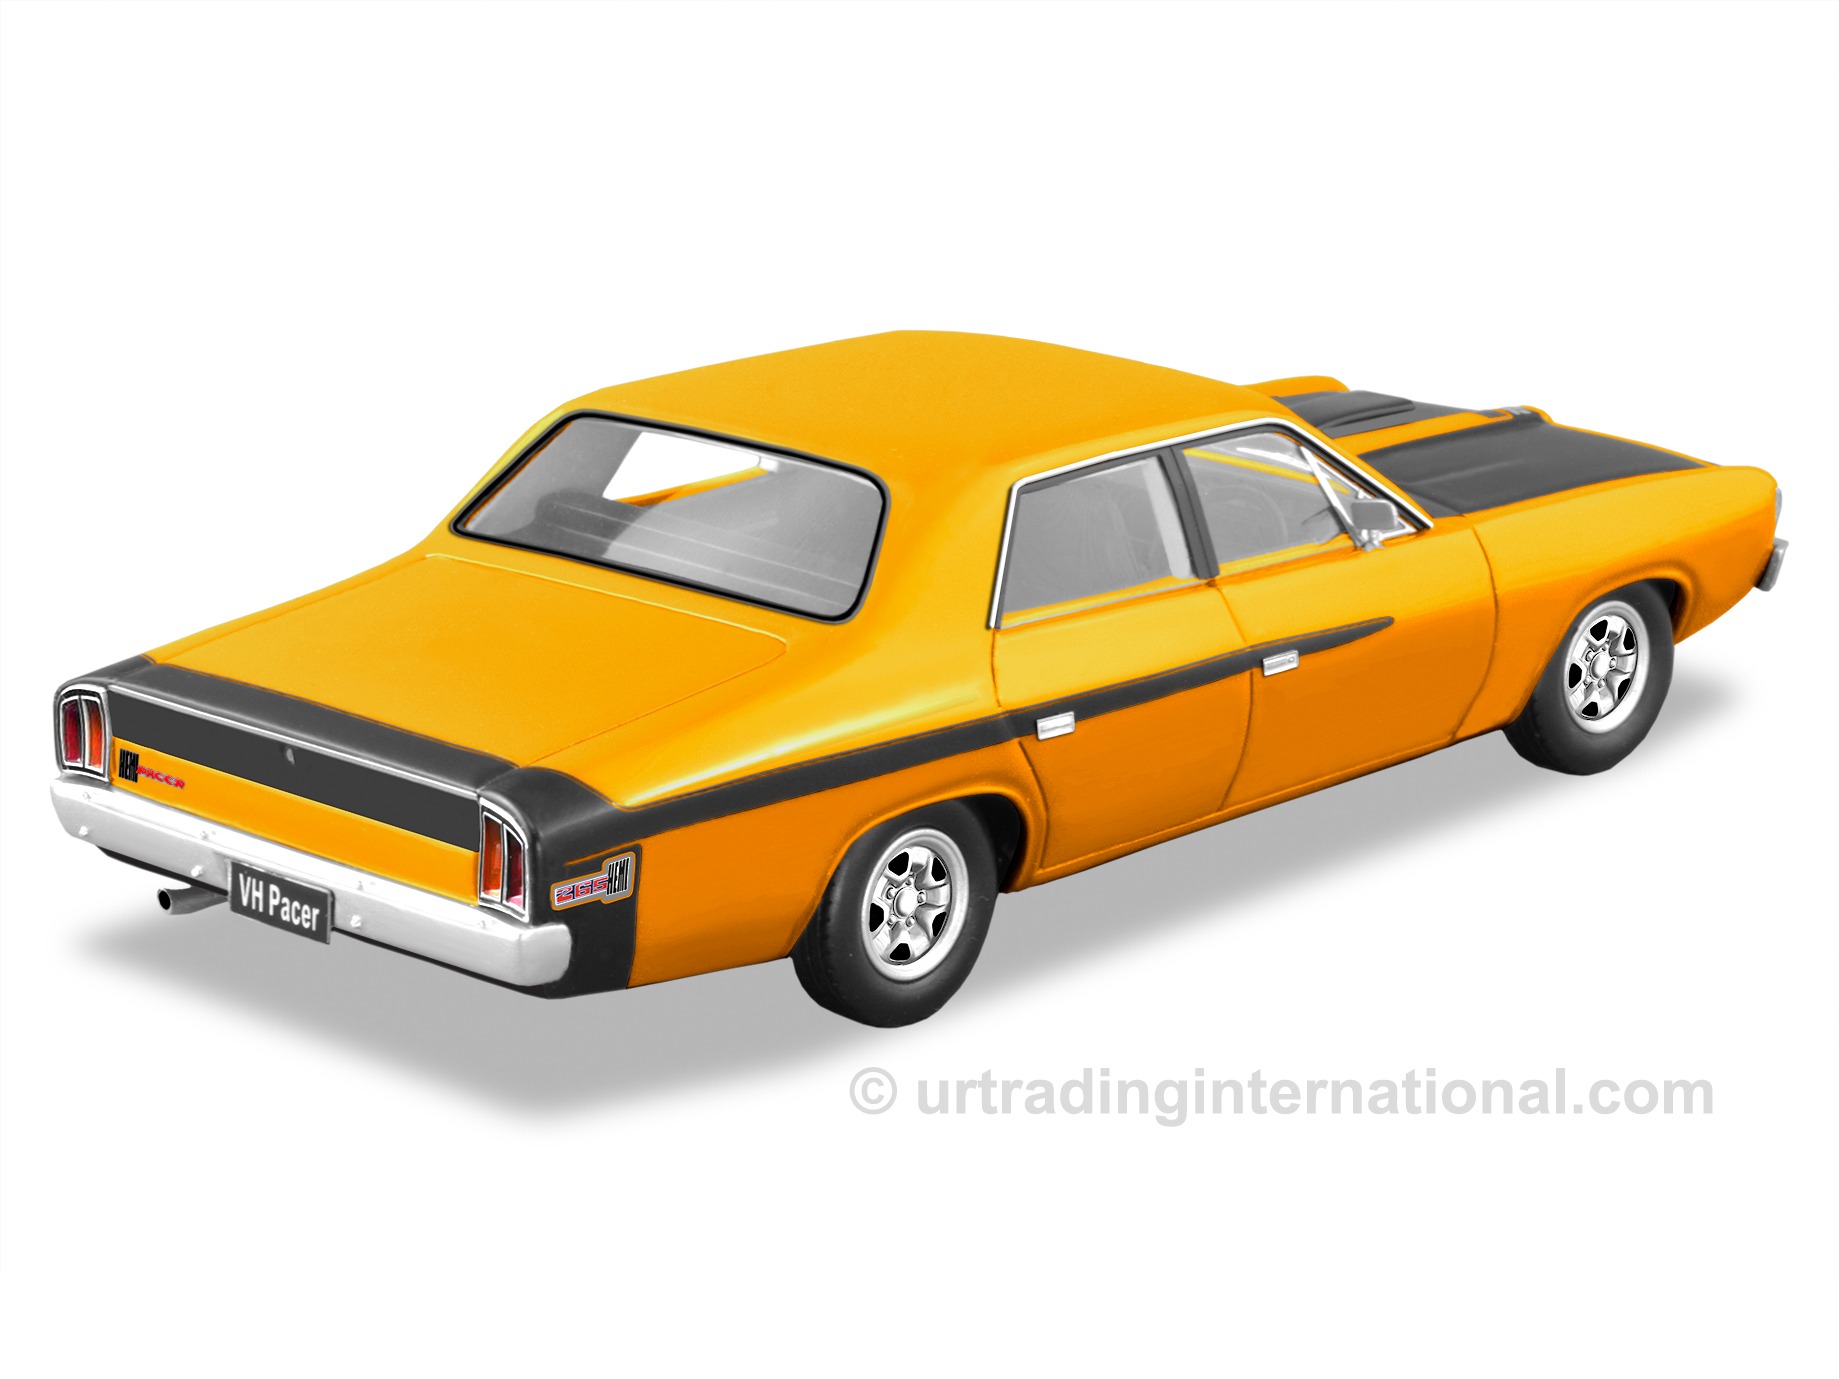 1972 Valiant VH Pacer – Hot Mustard